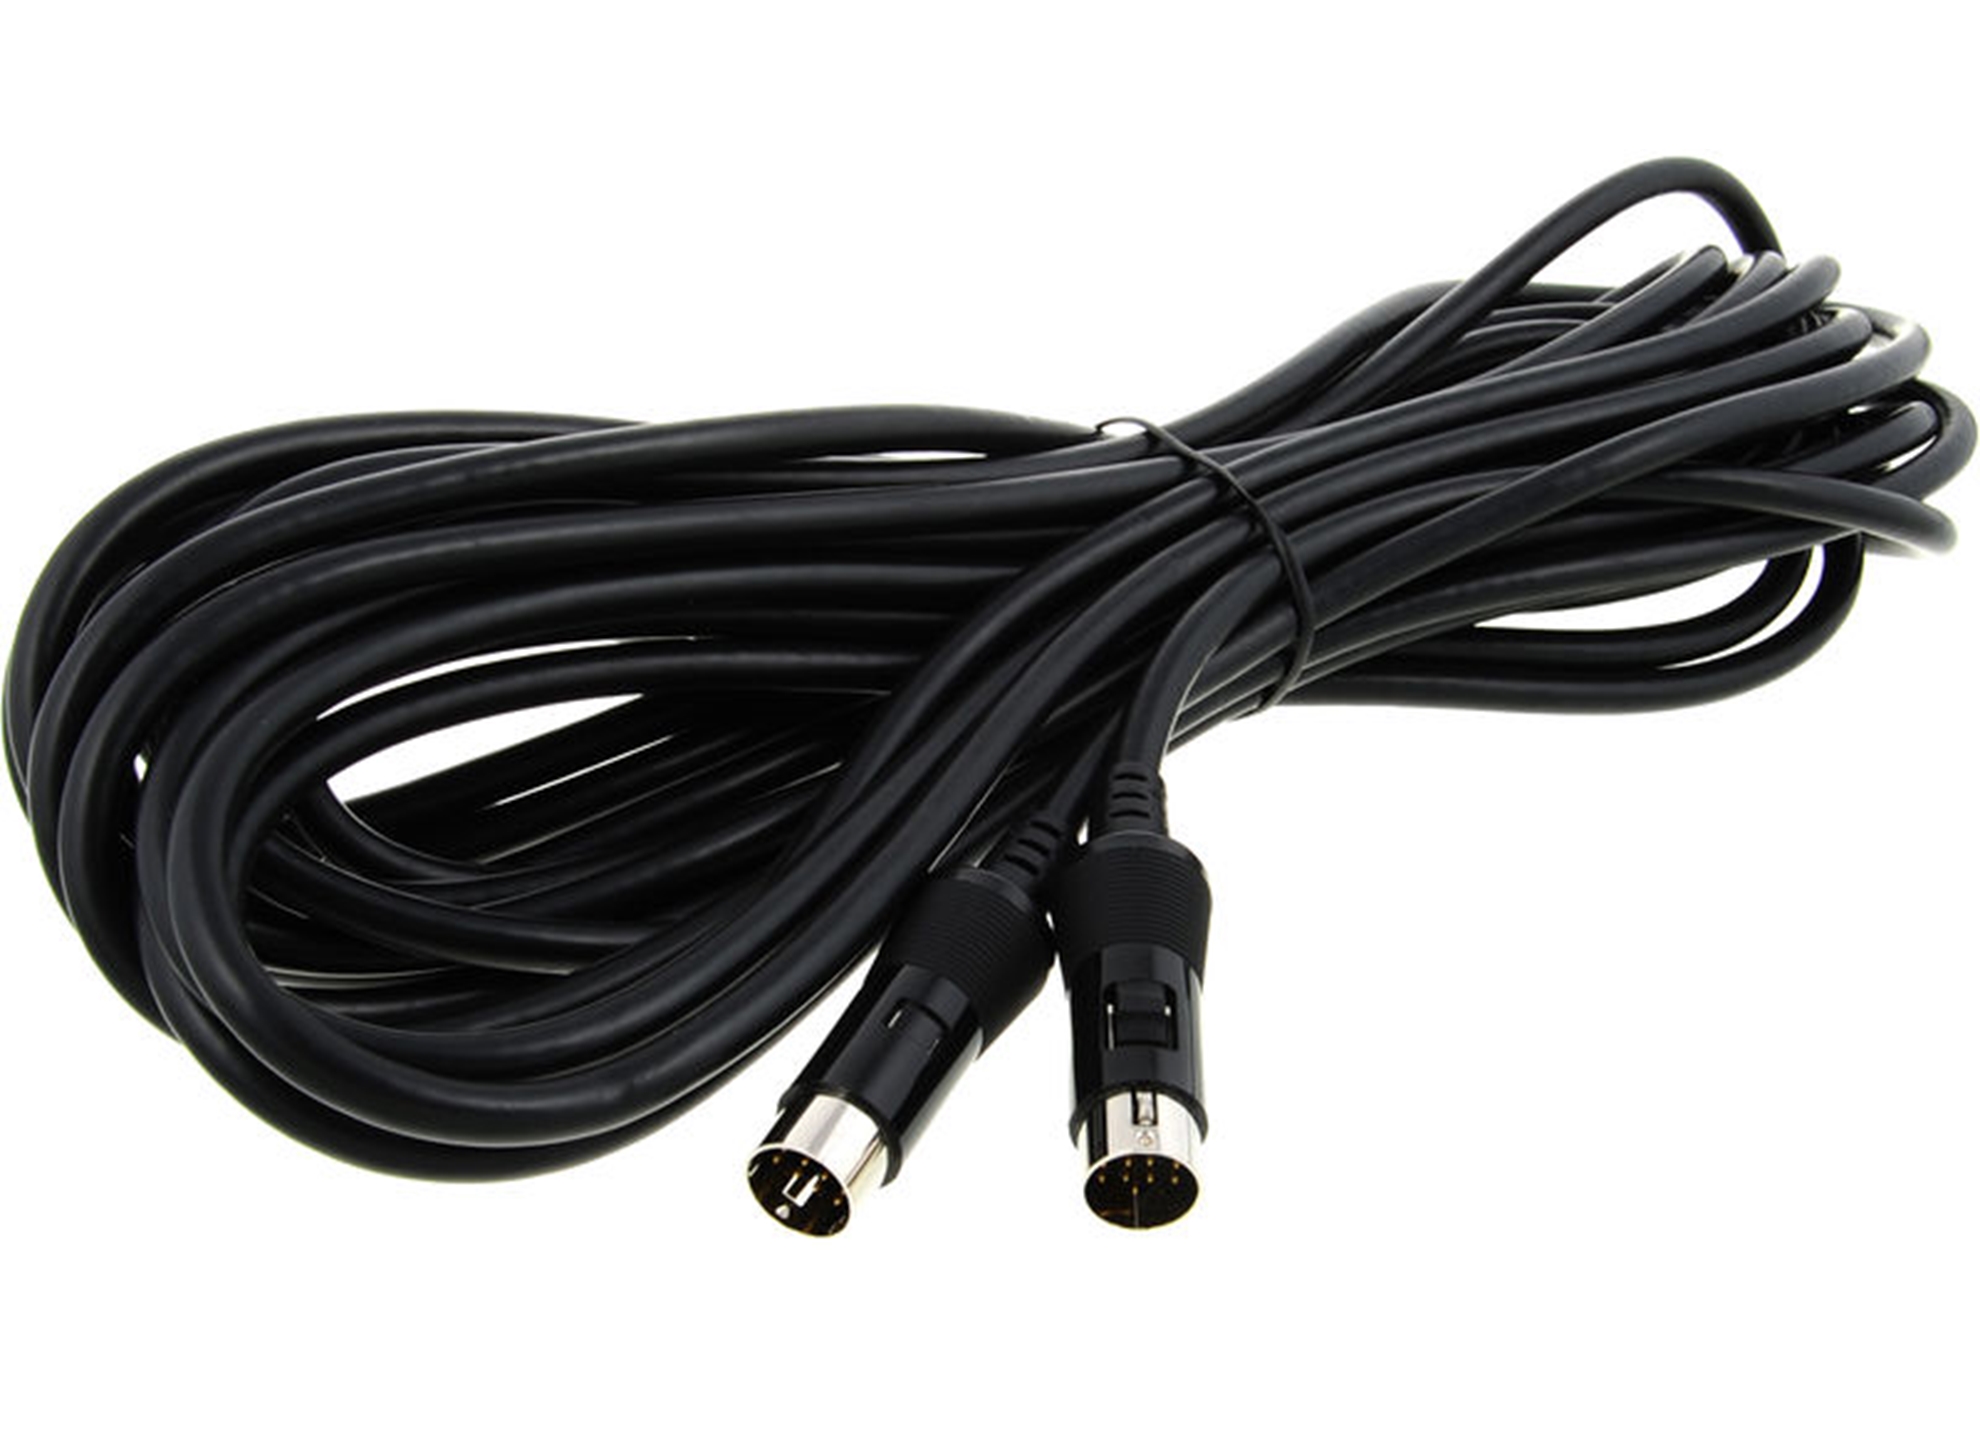 GKC-5 13-Pin Cable